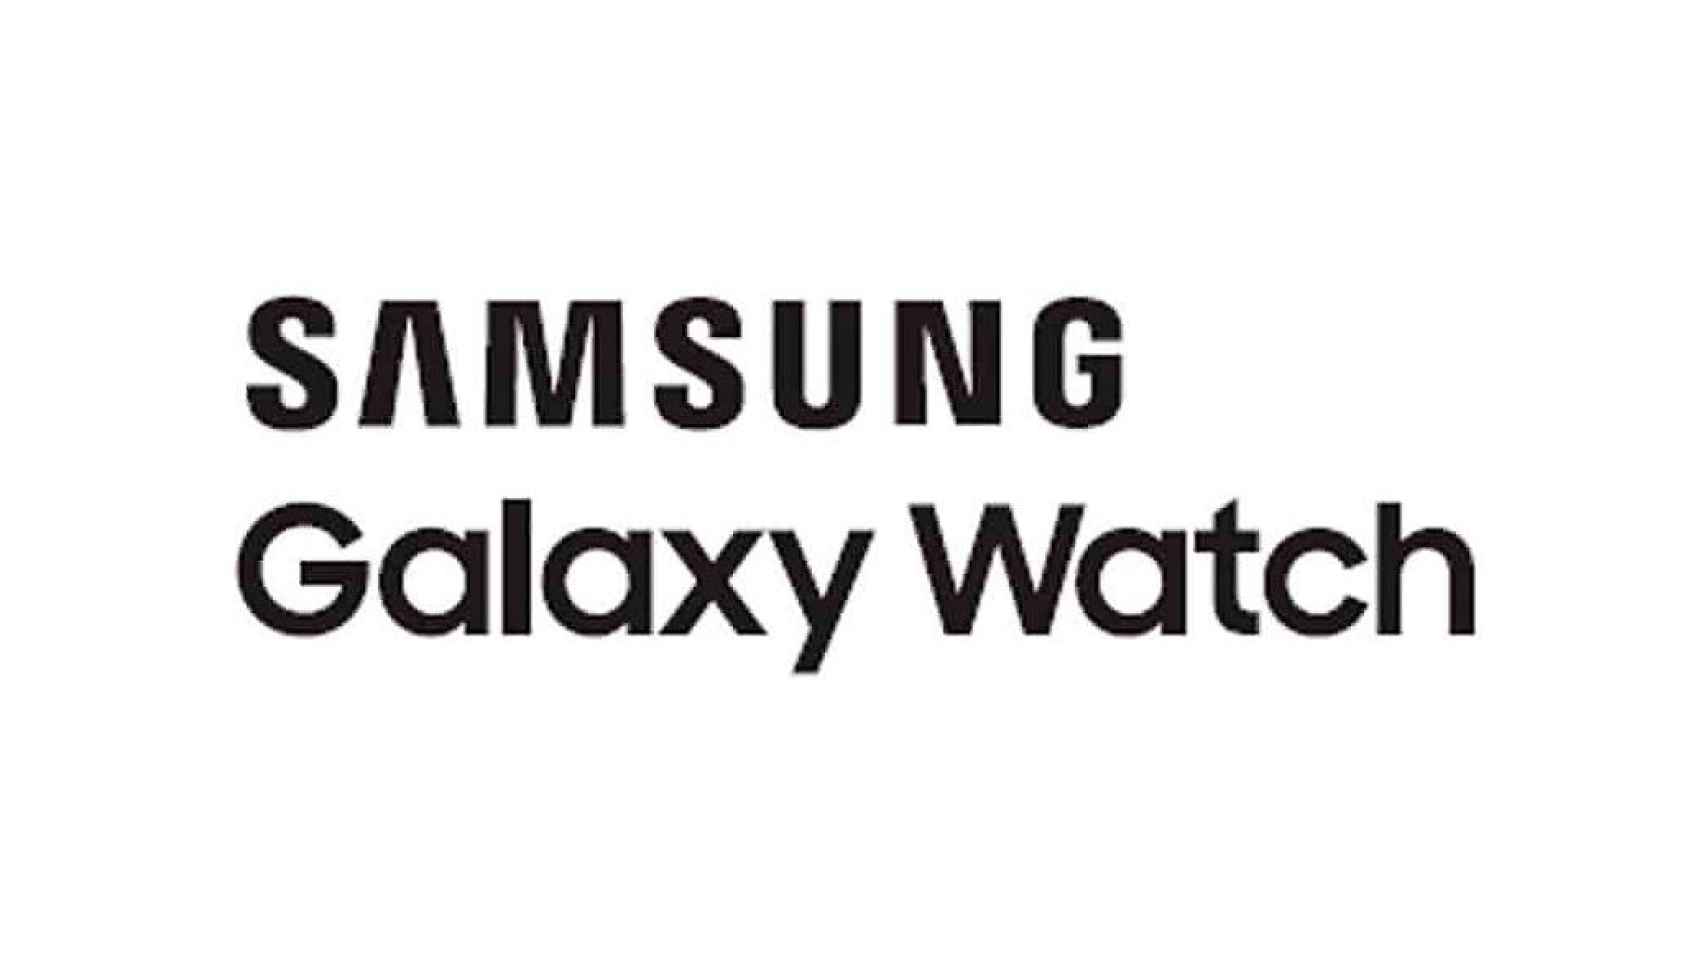 Samsung Galaxy Watch, así se llamará el nuevo reloj inteligente